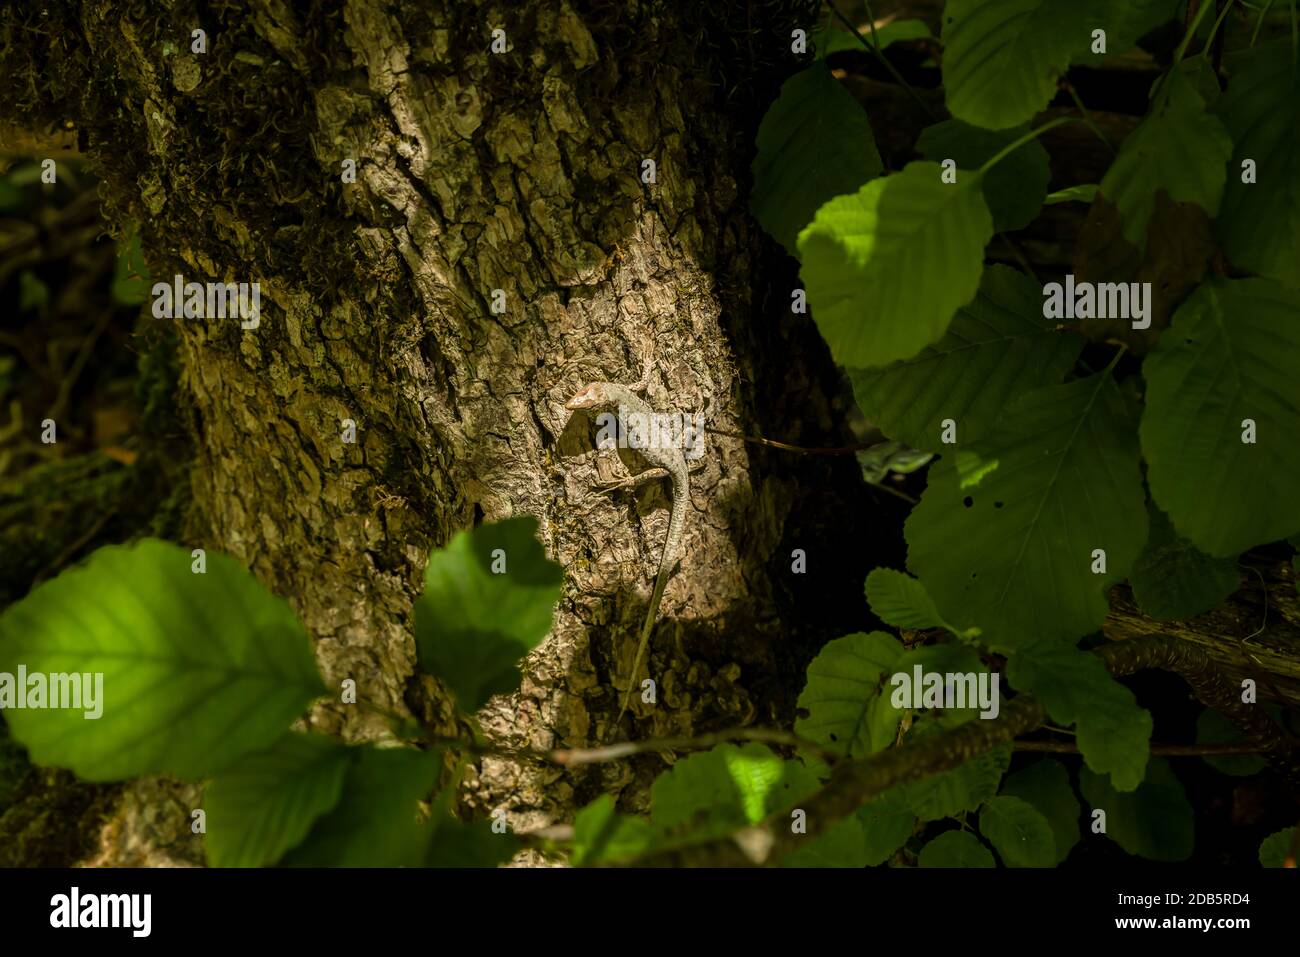 Grüne Waldeidechse, auf einem Baum sitzend. Wildeidechse grün. Stockfoto